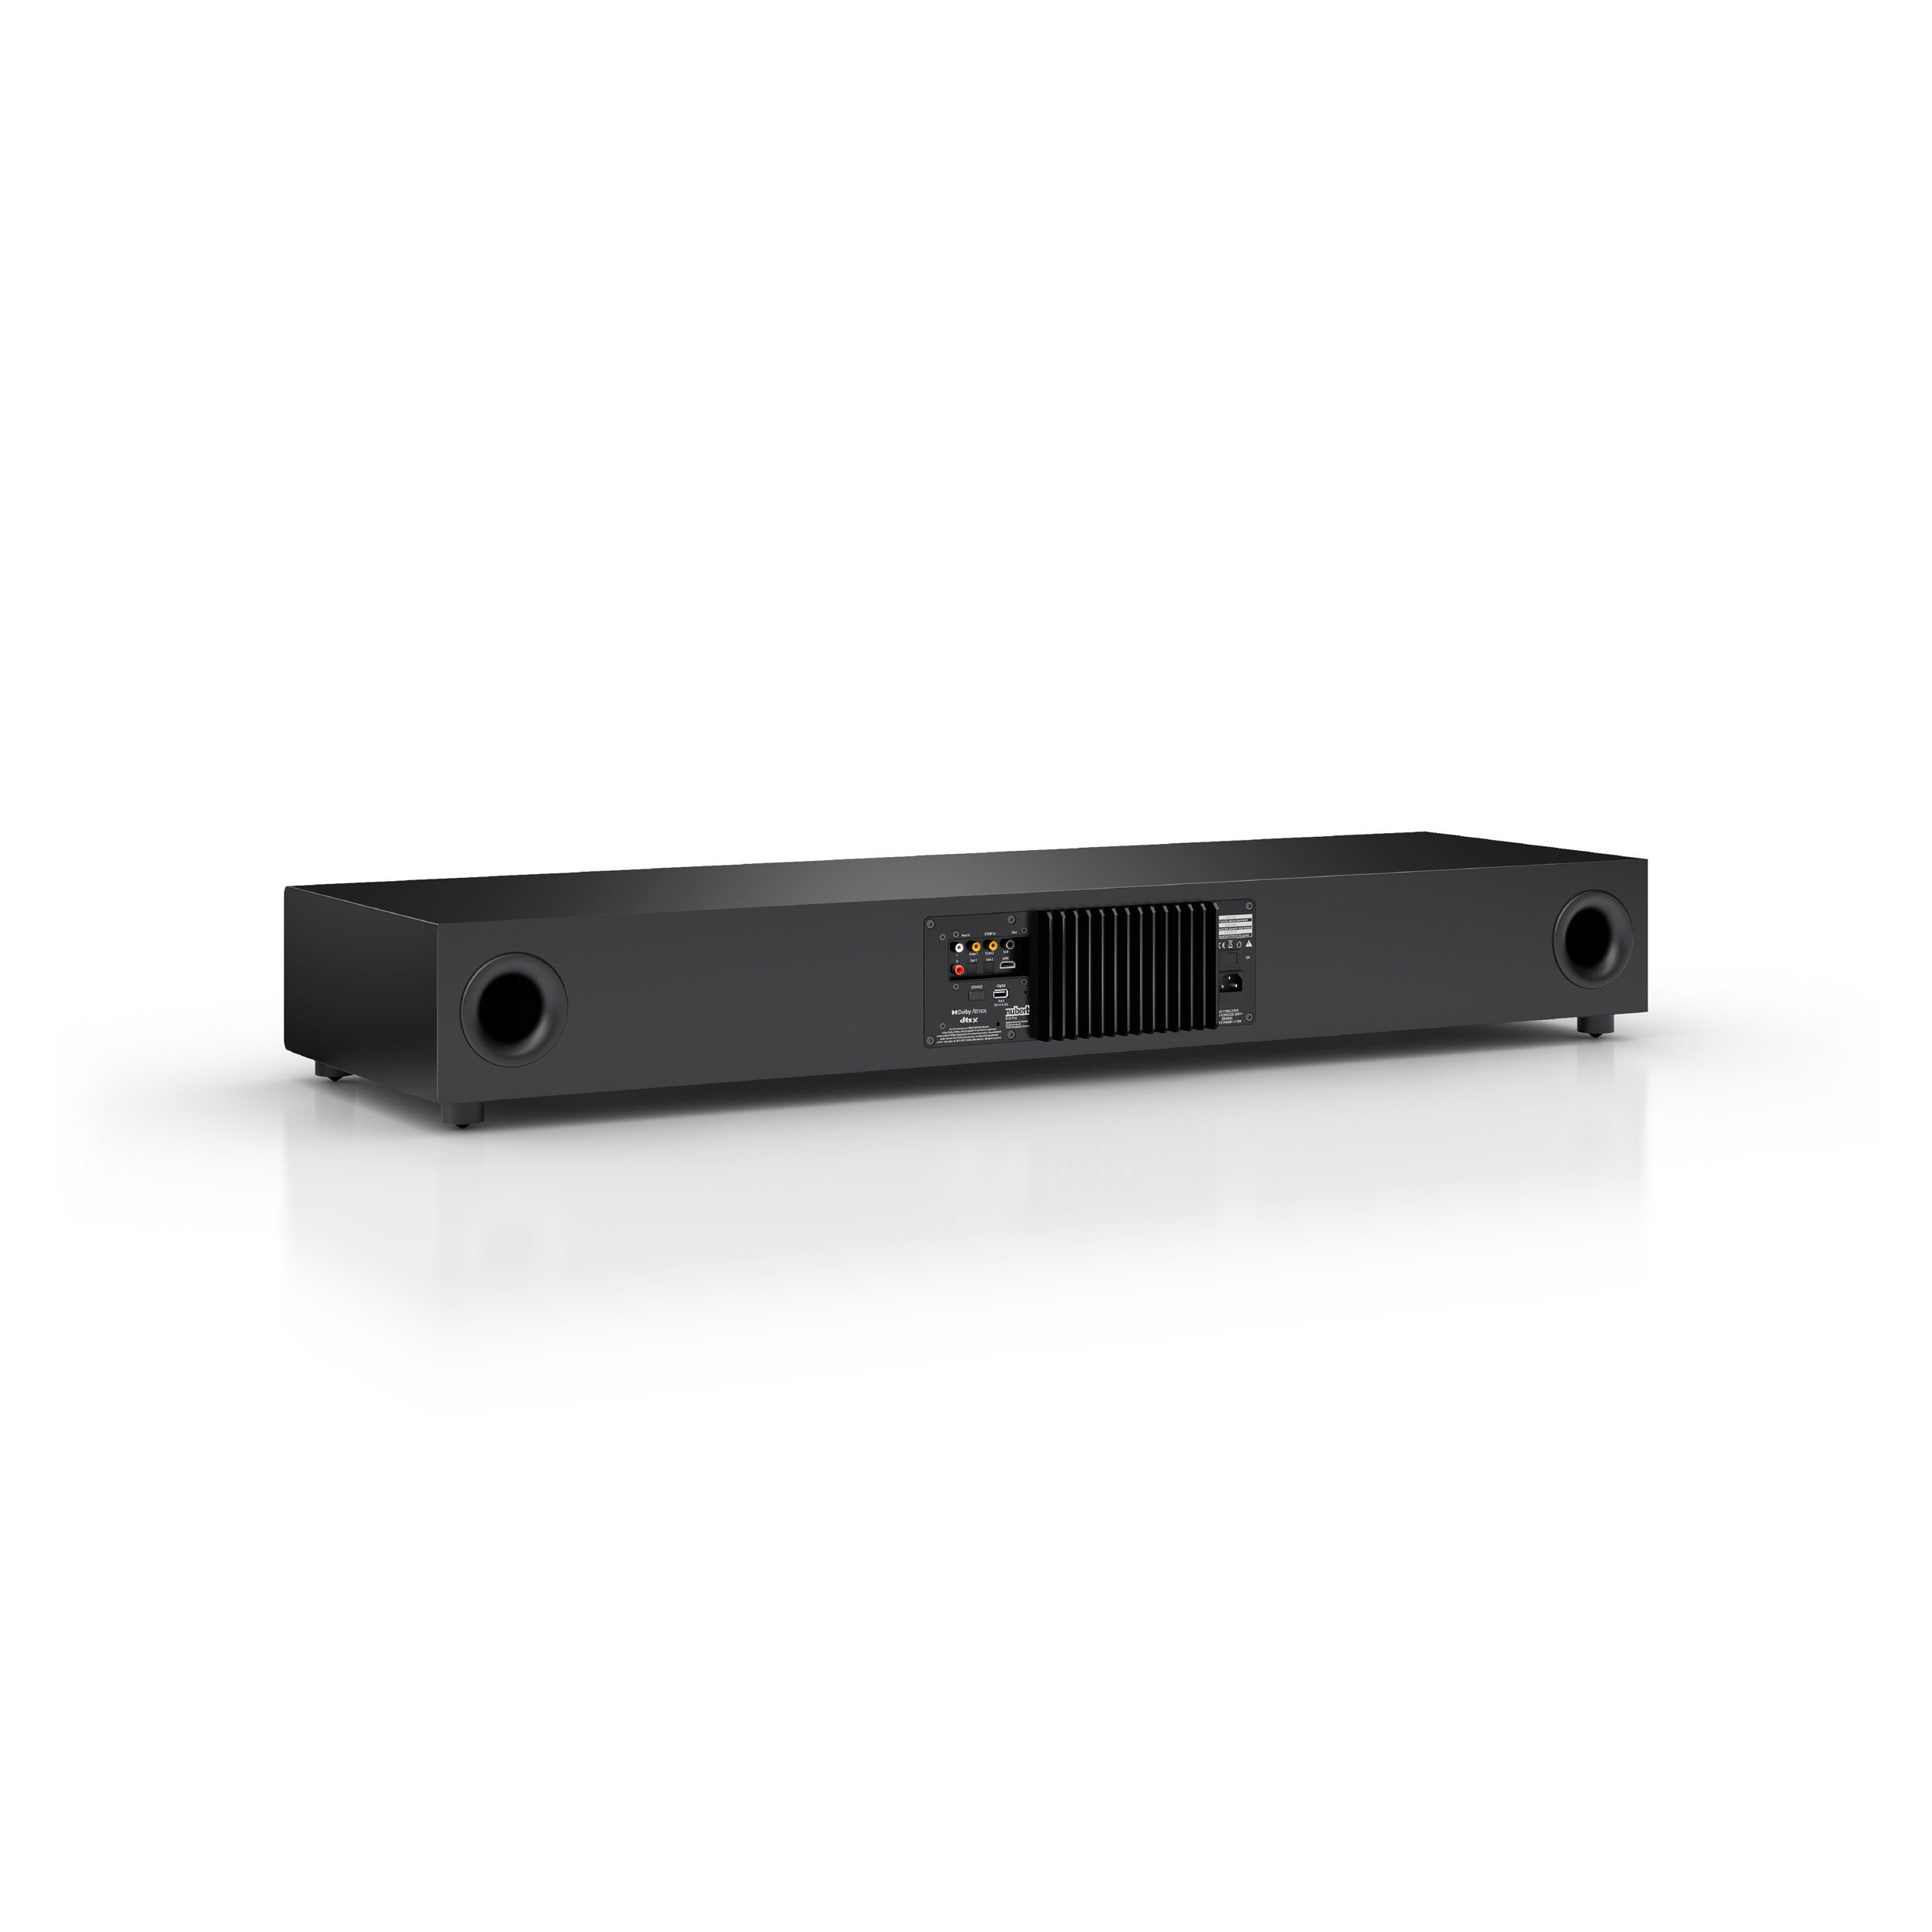 Nubert nuPro Surround) 5.0 Voice+, Dolby Bluetooth RC und (820 Mehrschichtlack Schwarz Decoder, Soundbar XS-8500 eARC, HDMI W, X-Connect aptX Digital HD